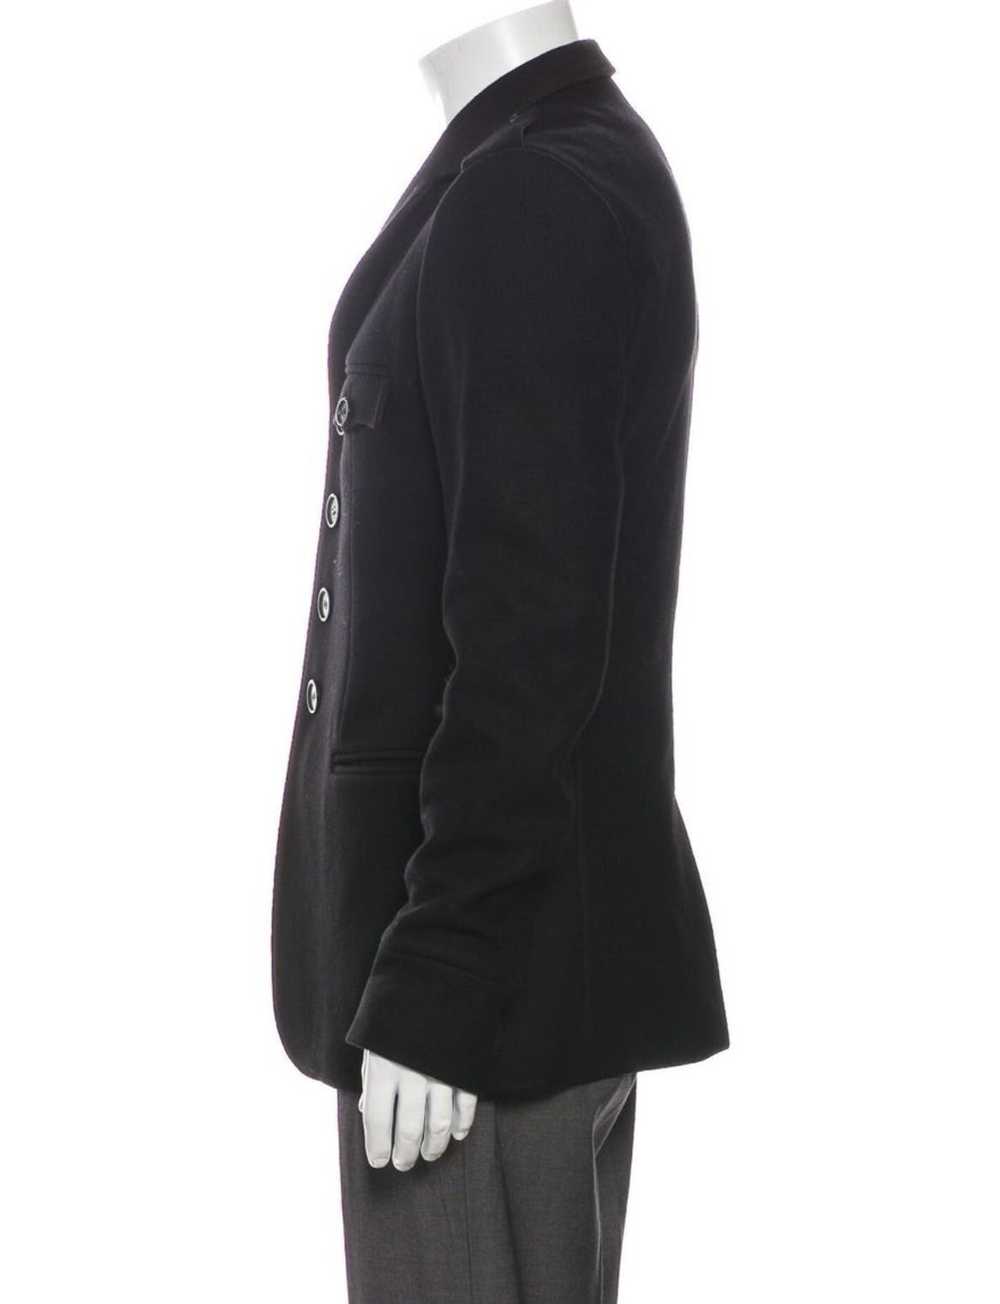 Dior × Hedi Slimane Vintage 2006 jacket - image 3